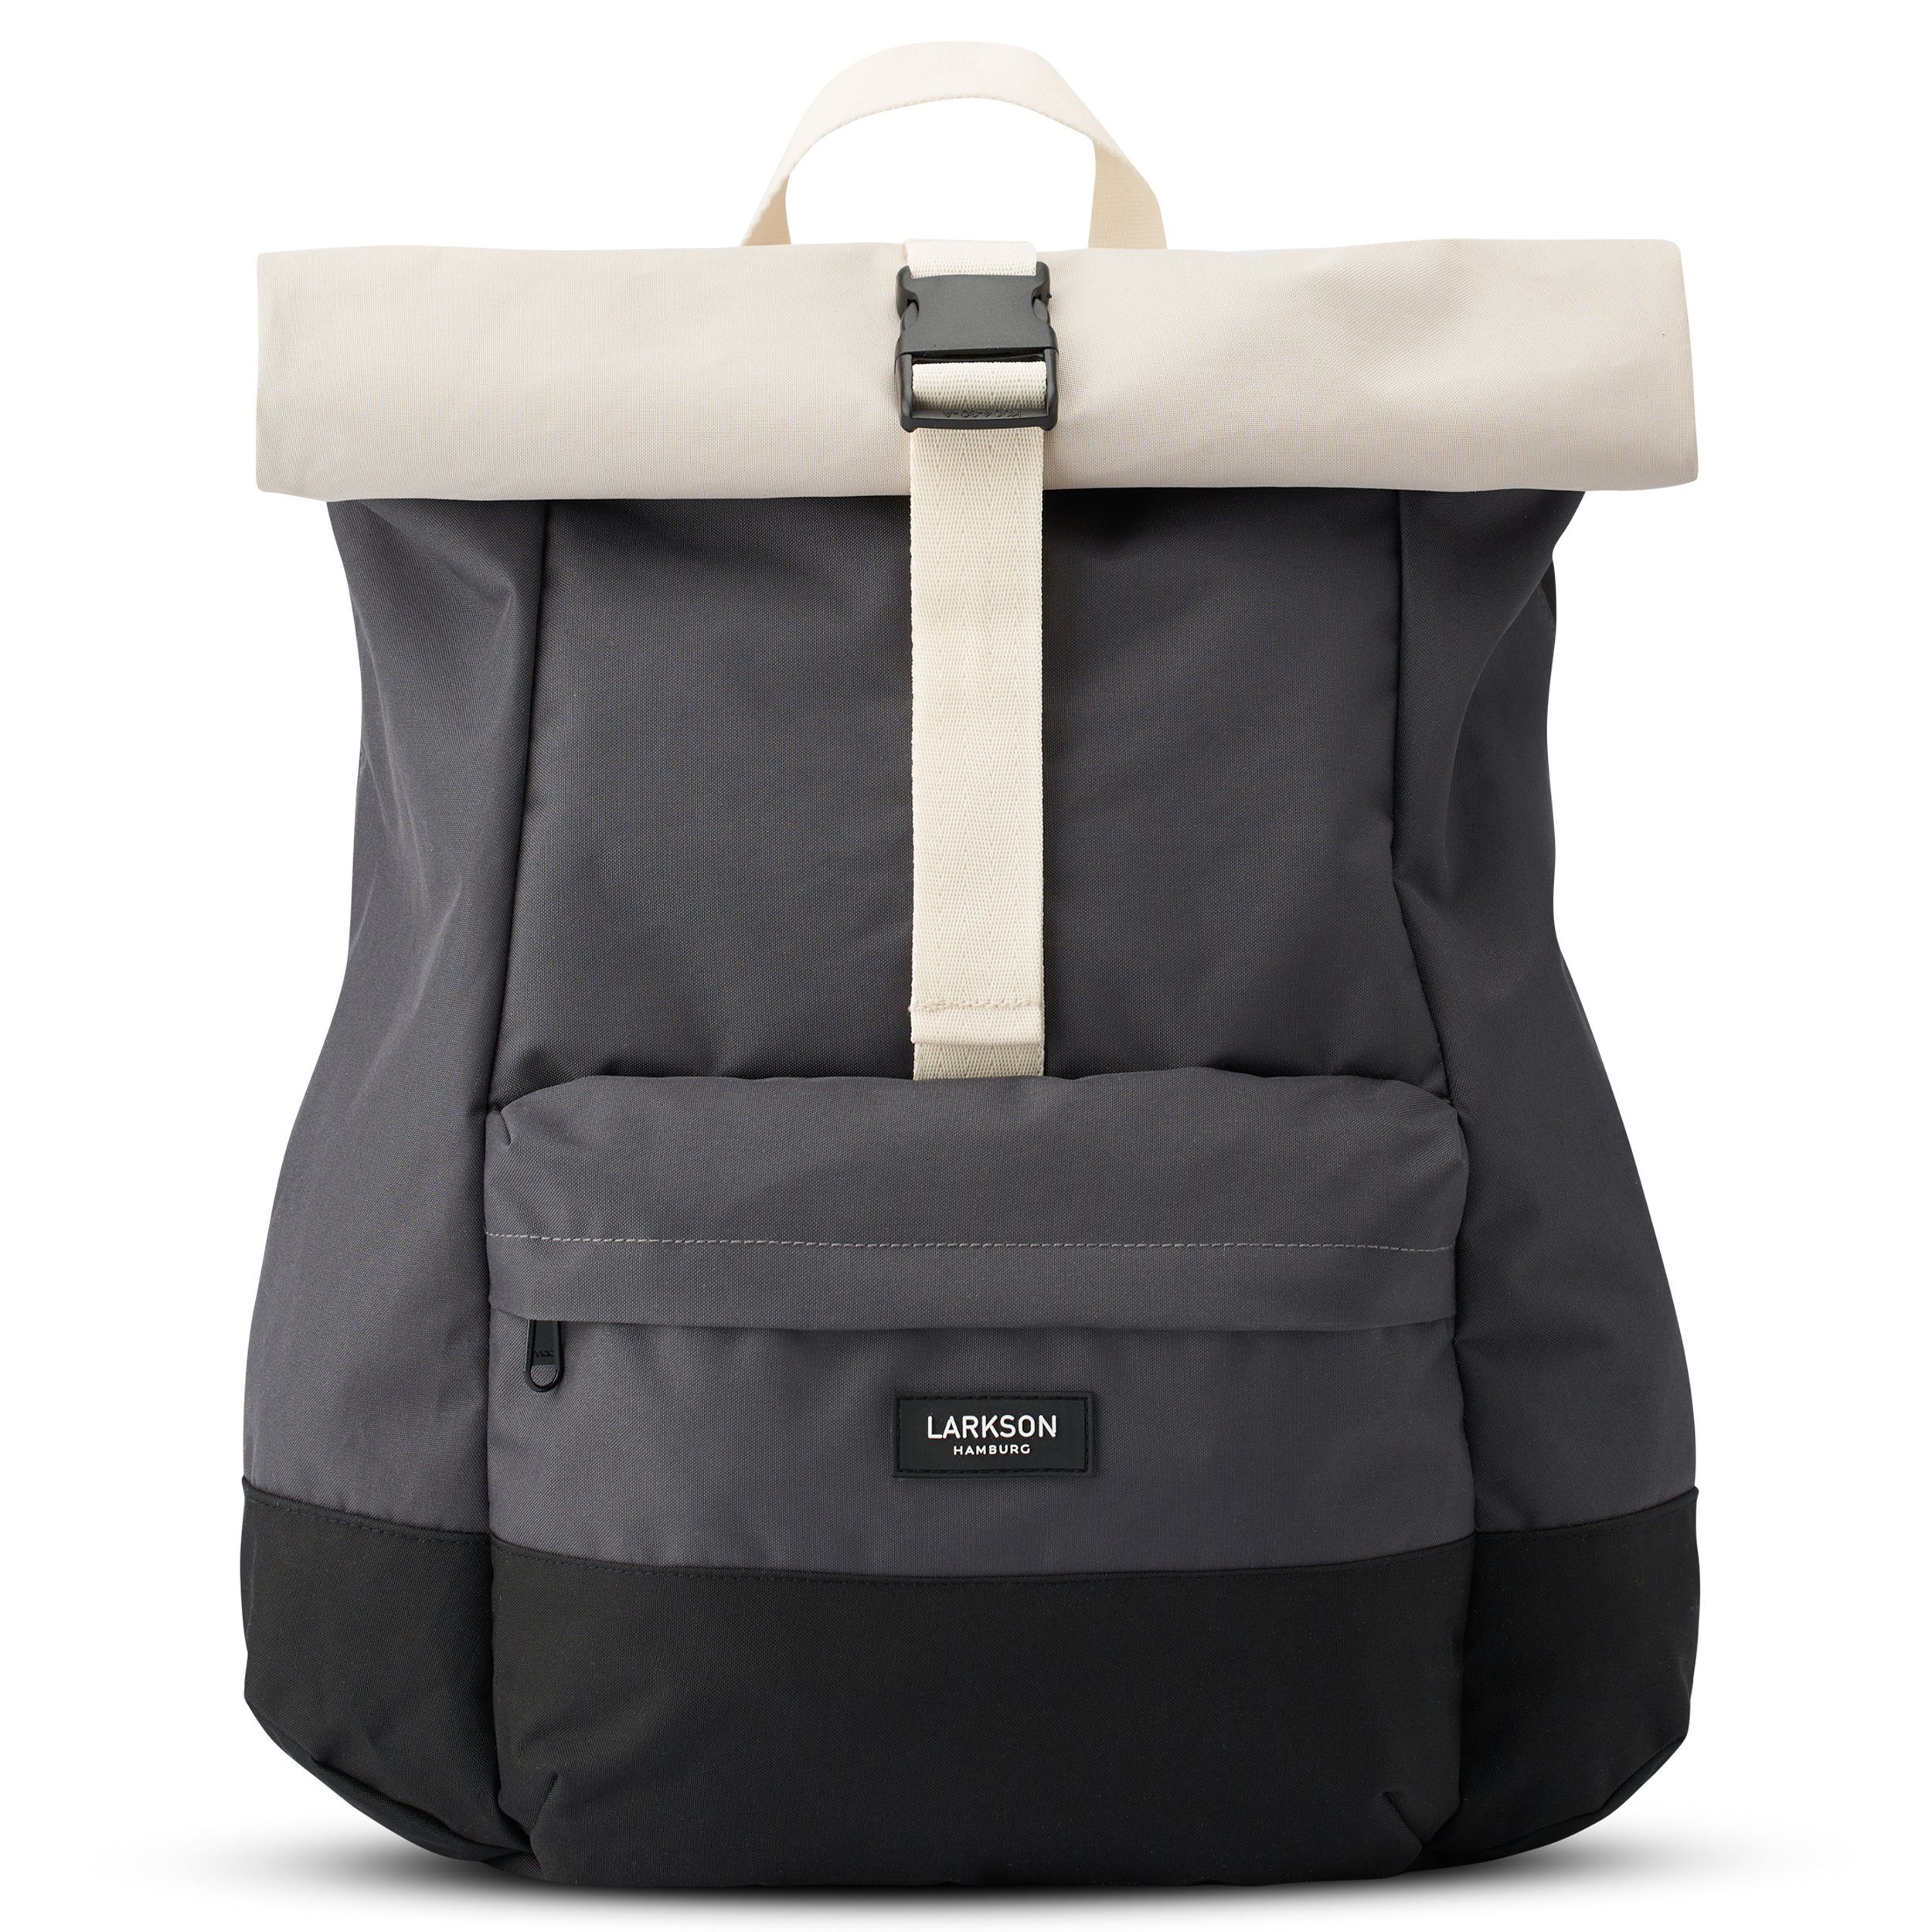 Damen Rucksack großer Kurierrucksack Backpack Laptopfach Sport Freizeit günstig! 